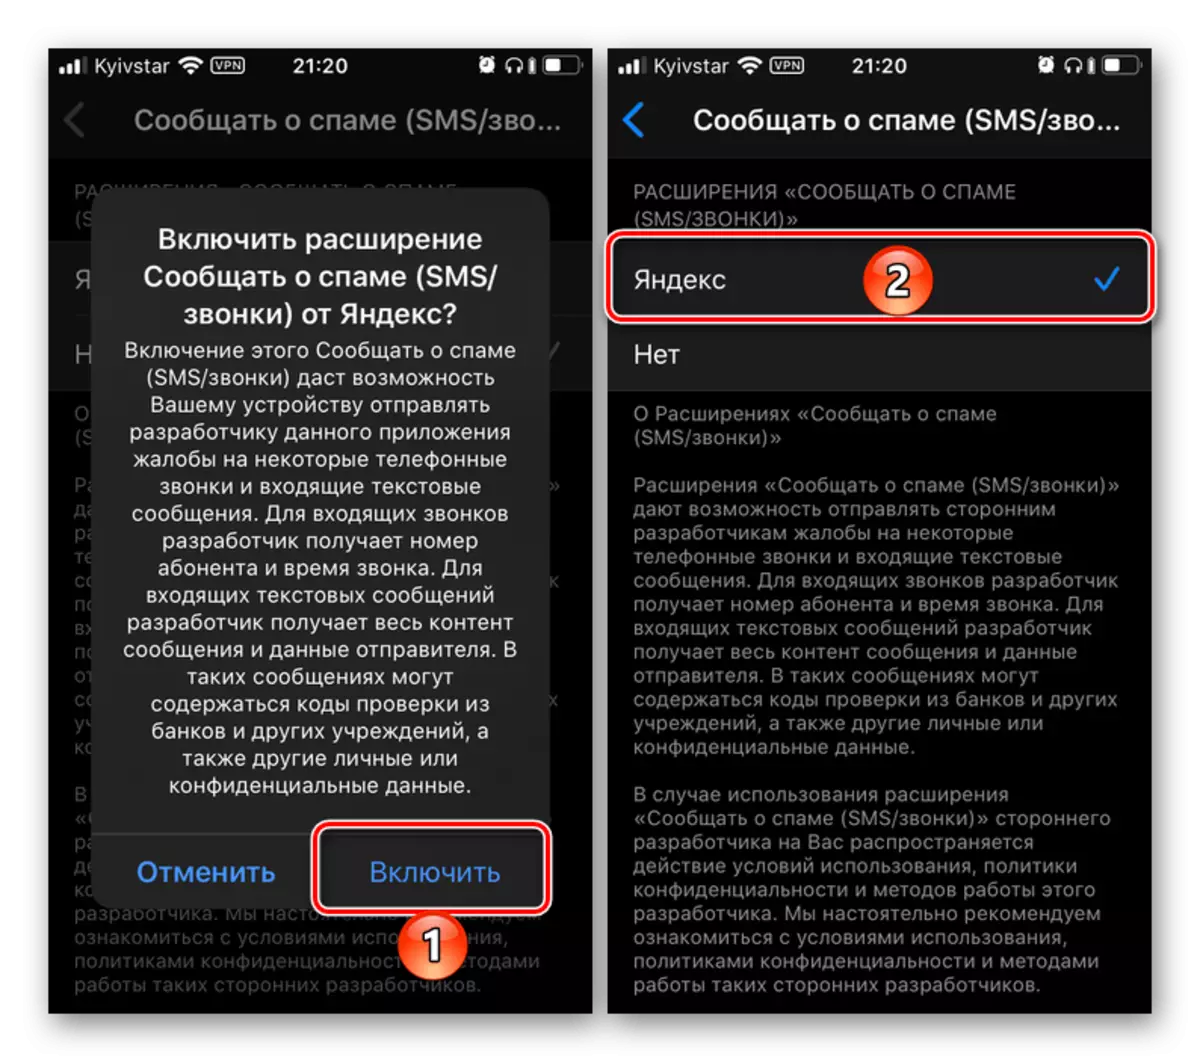 Bevestiging van die insluiting van spam boodskappe deur die identifikasie van die Yandex nommer op die iPhone